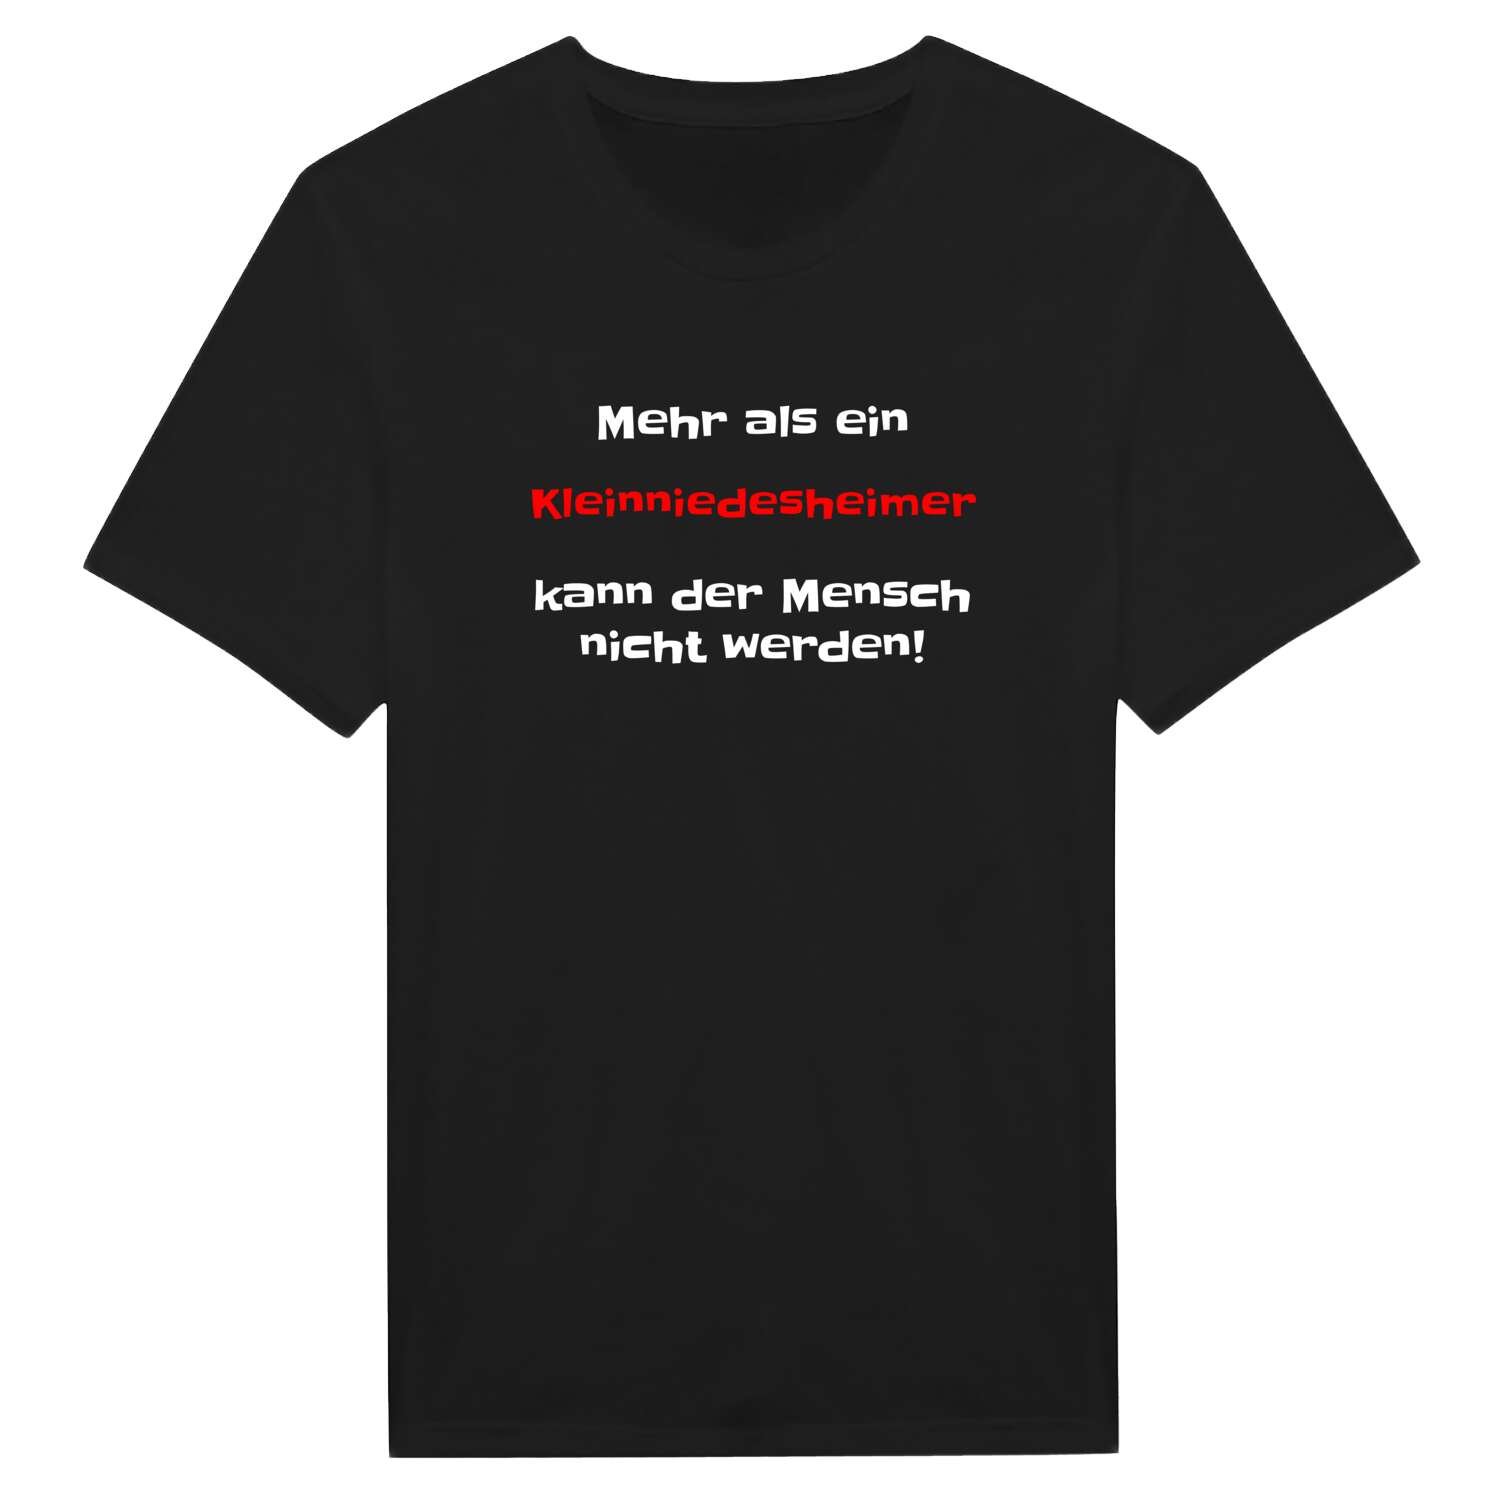 Kleinniedesheim T-Shirt »Mehr als ein«